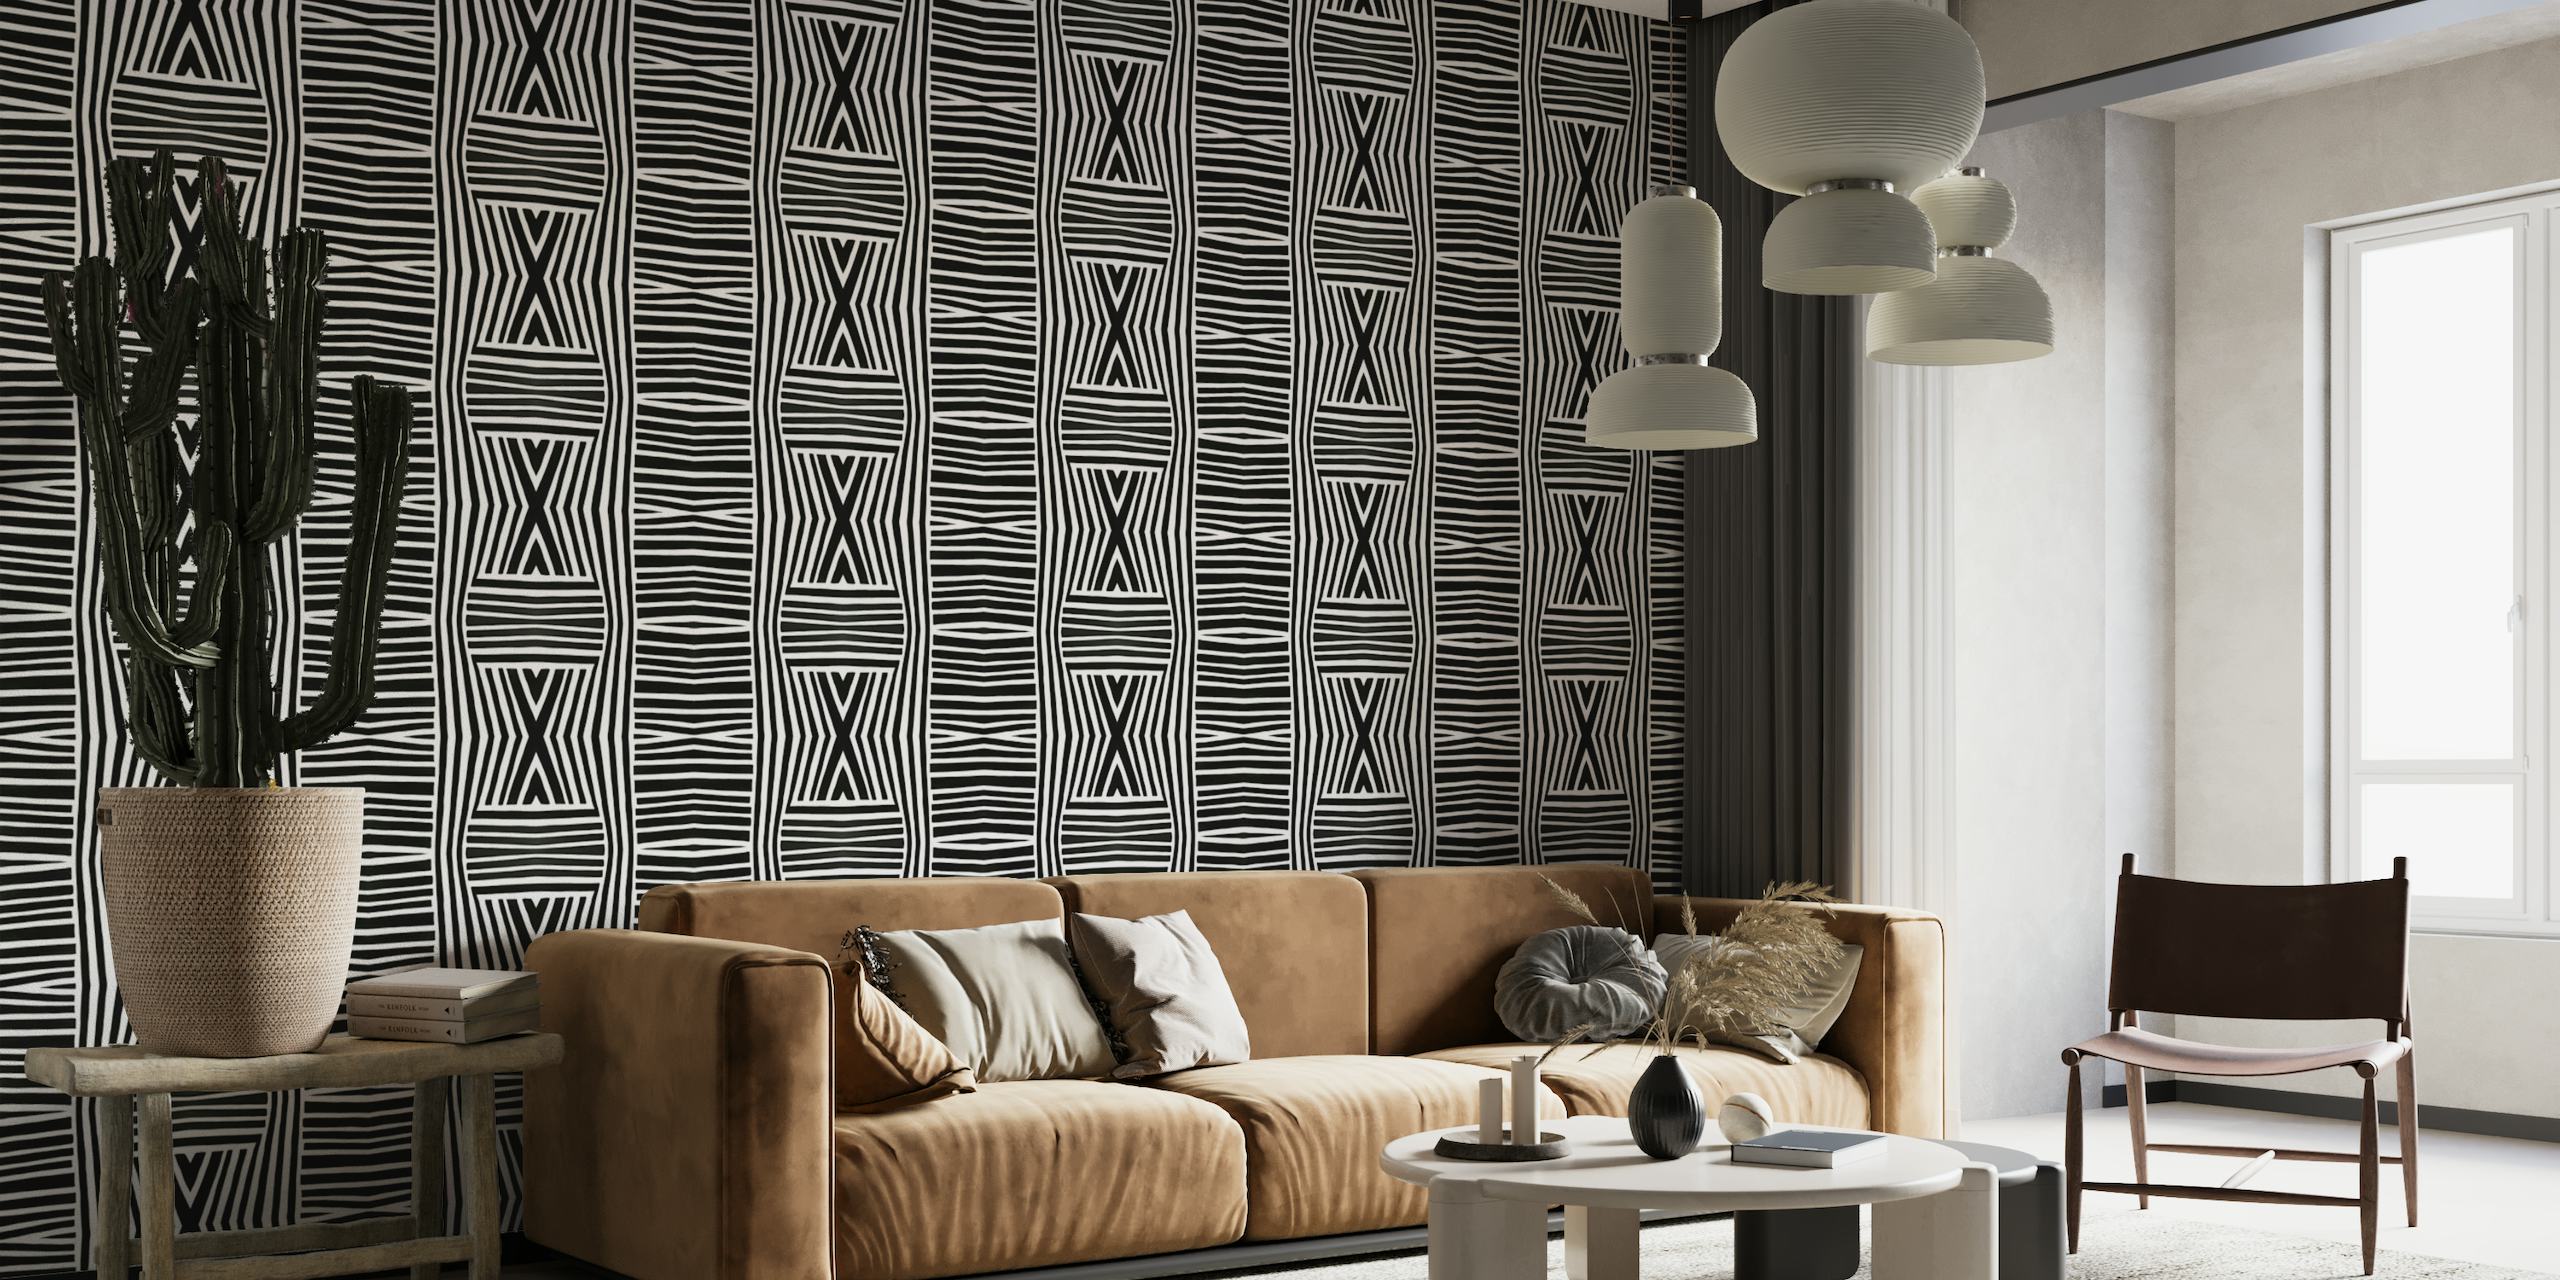 Fotomural vinílico de parede com padrão tribal preto e branco e design de inspiração africana